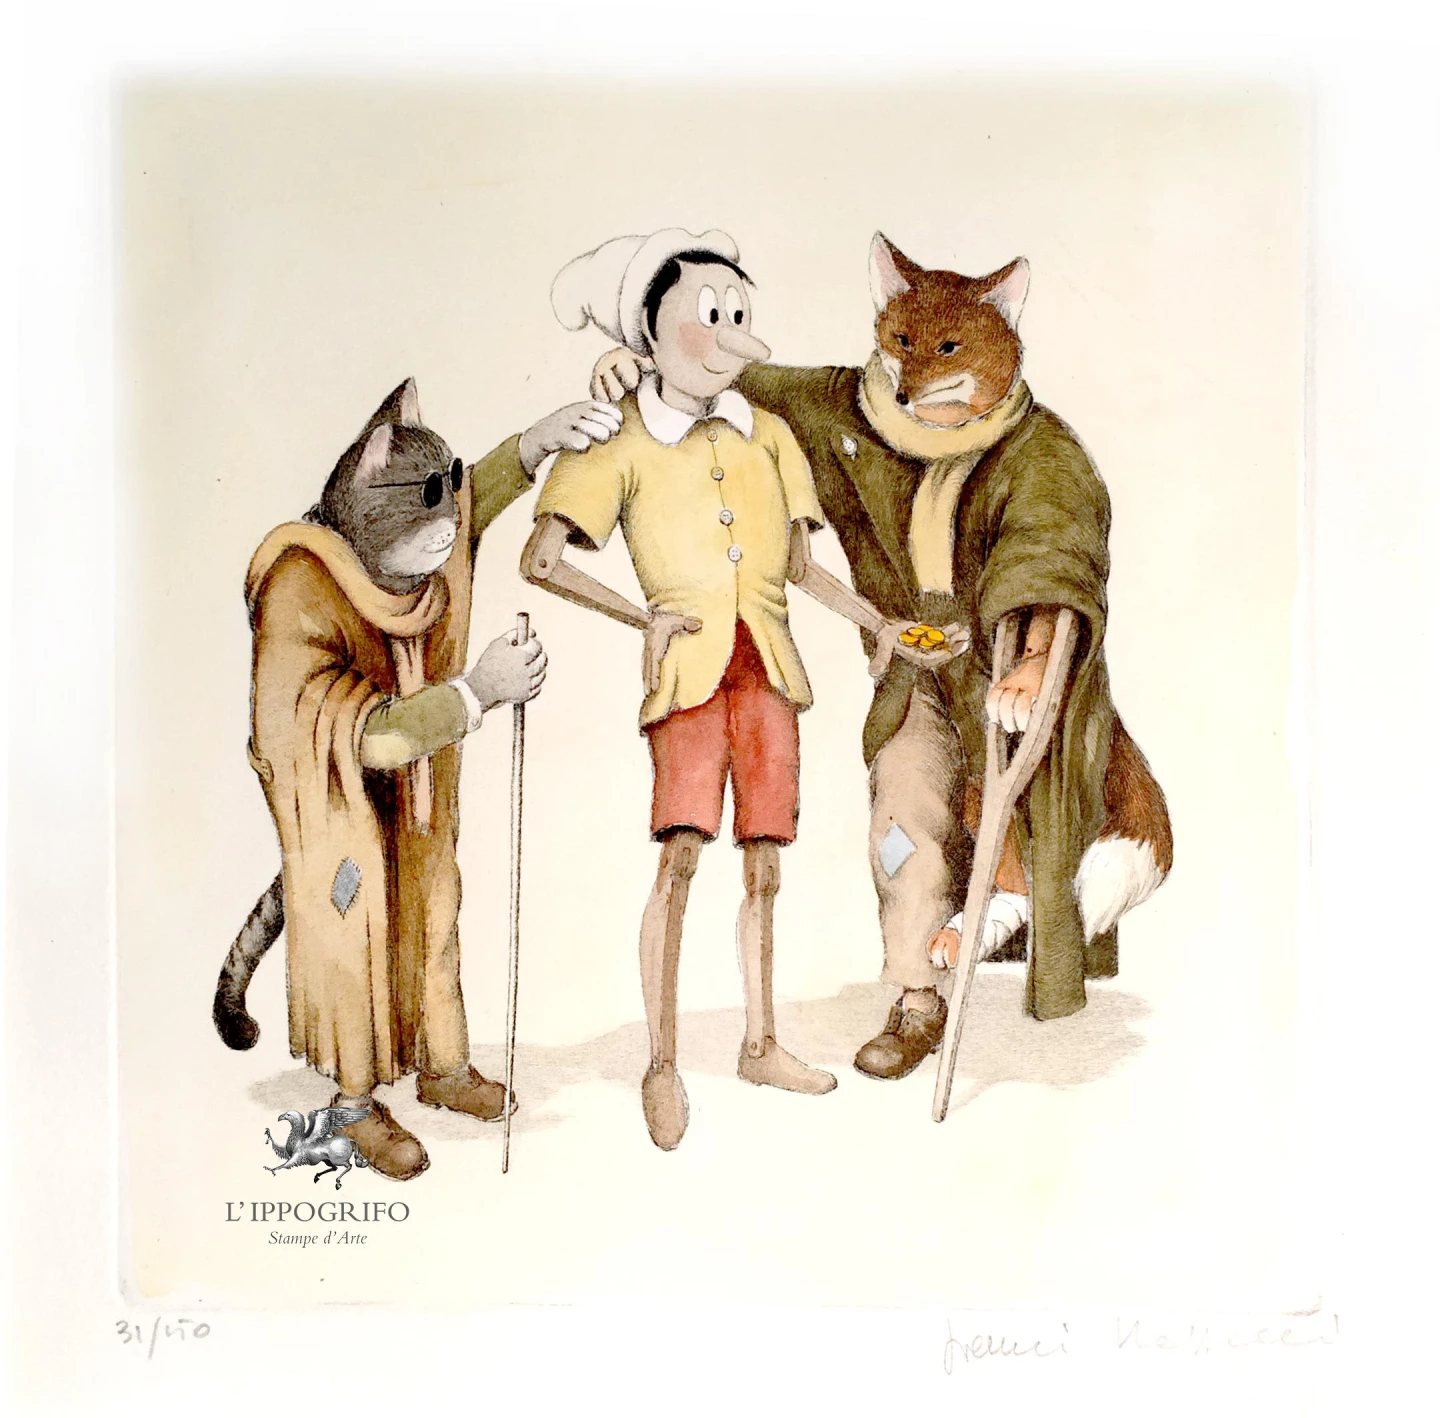 Pinocchio, il Gatto e la Volpe